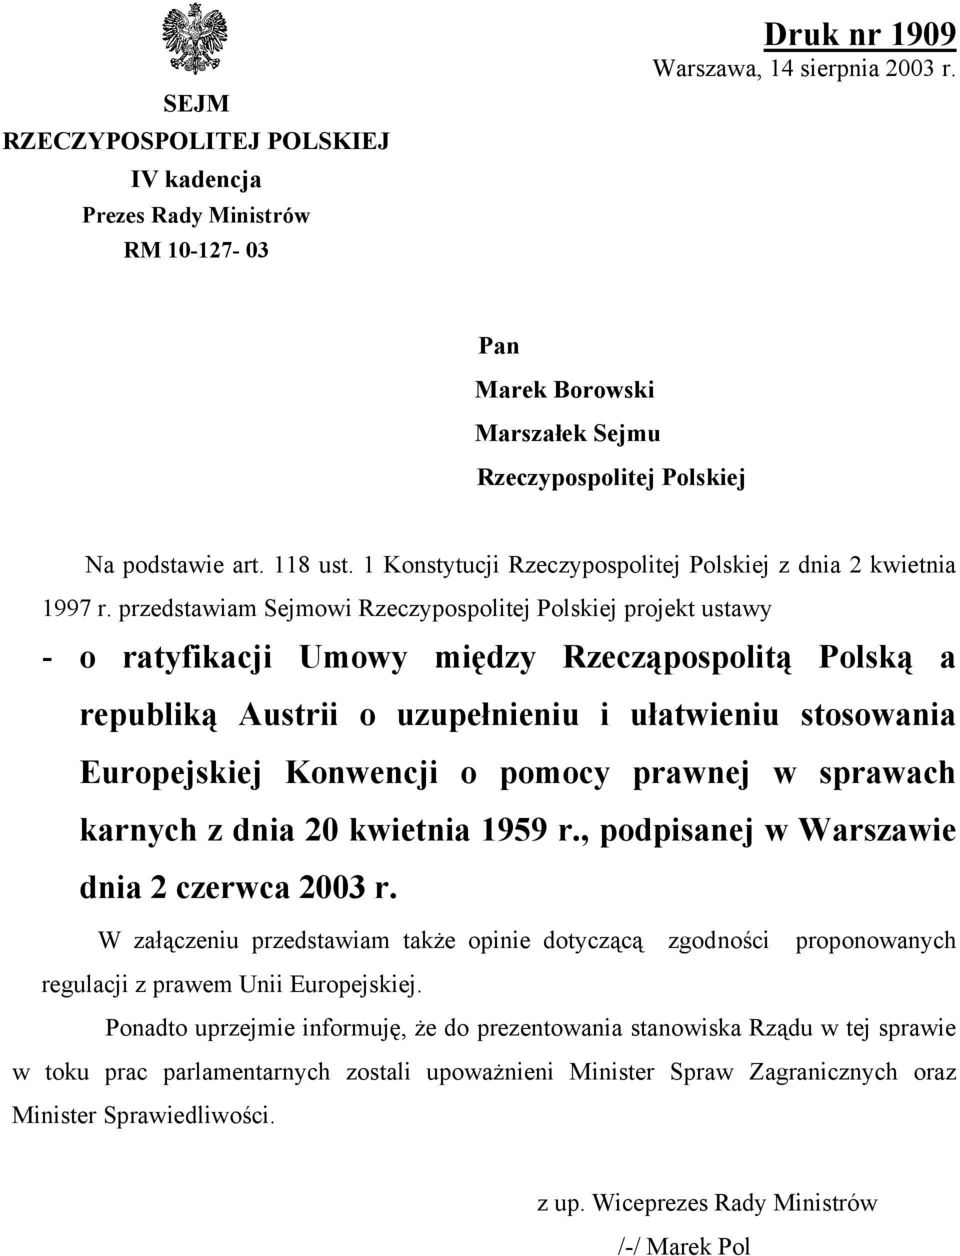 przedstawiam Sejmowi Rzeczypospolitej Polskiej projekt ustawy - o ratyfikacji Umowy między Rzecząpospolitą Polską a republiką Austrii o uzupełnieniu i ułatwieniu stosowania Europejskiej Konwencji o